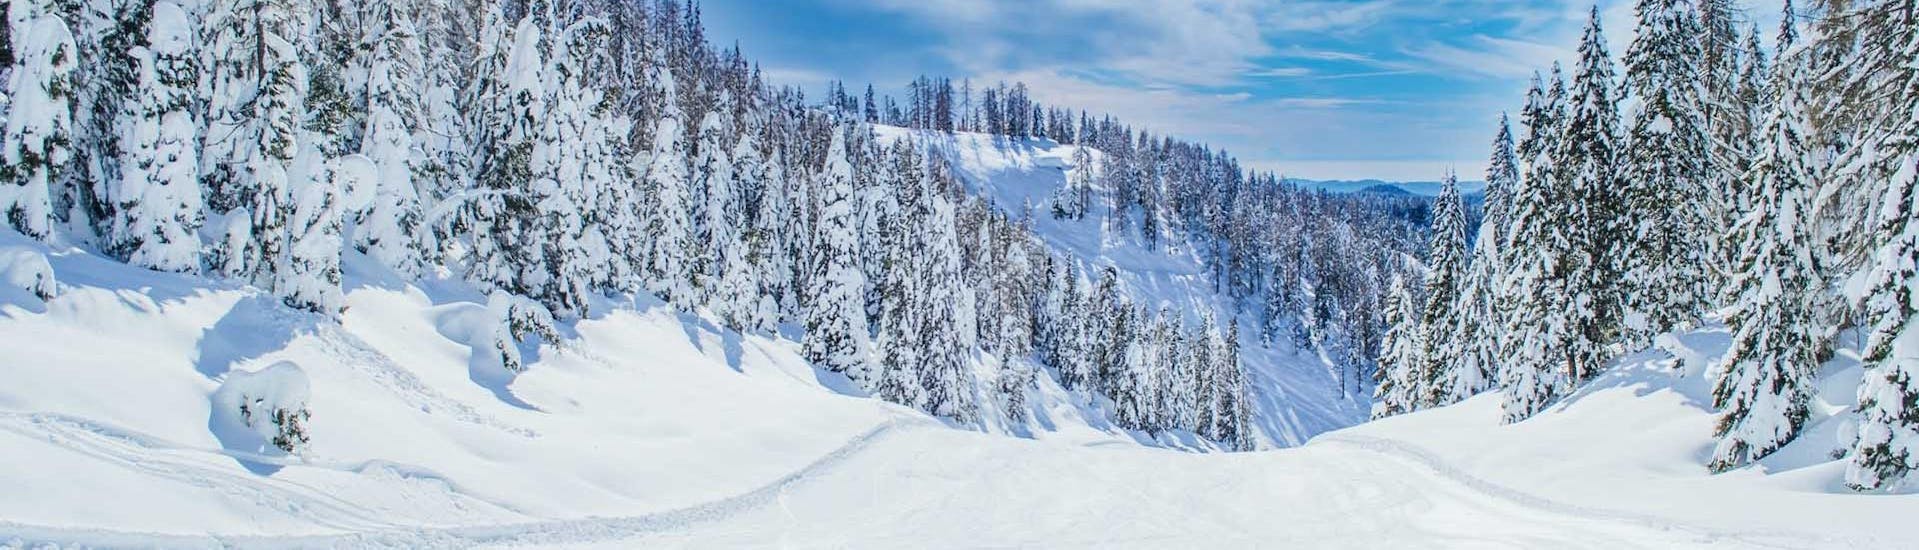 Privé skilessen voor volwassenen voor alle niveaus.